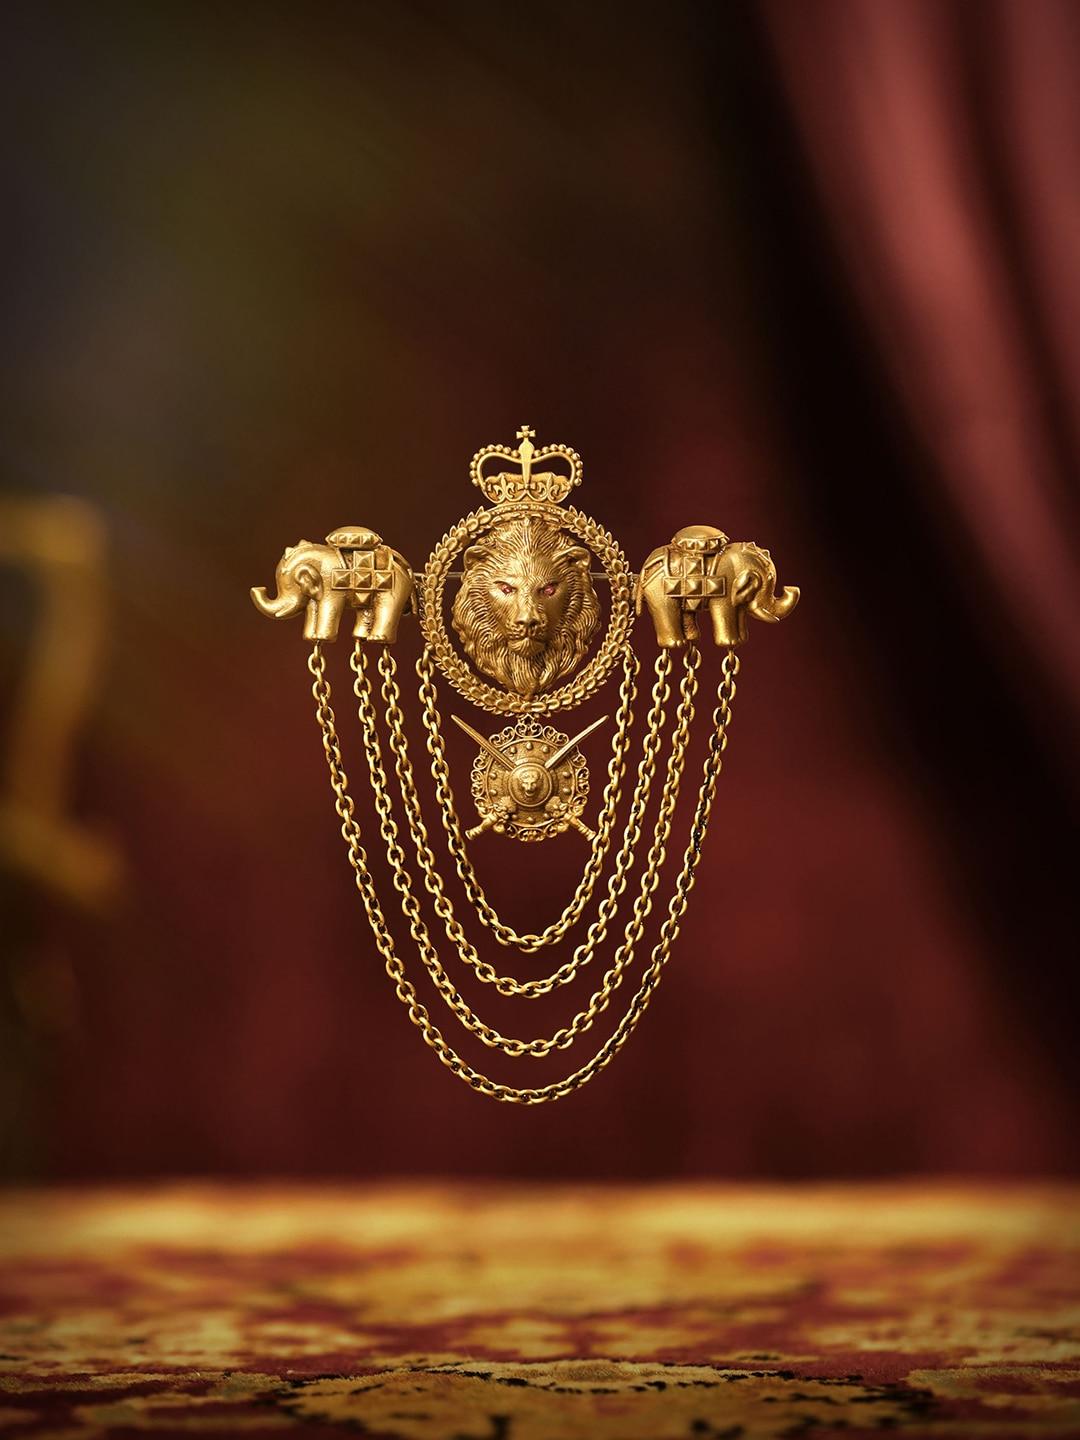 COSA NOSTRAA Men Antique Gold-Toned Ruler Brooch